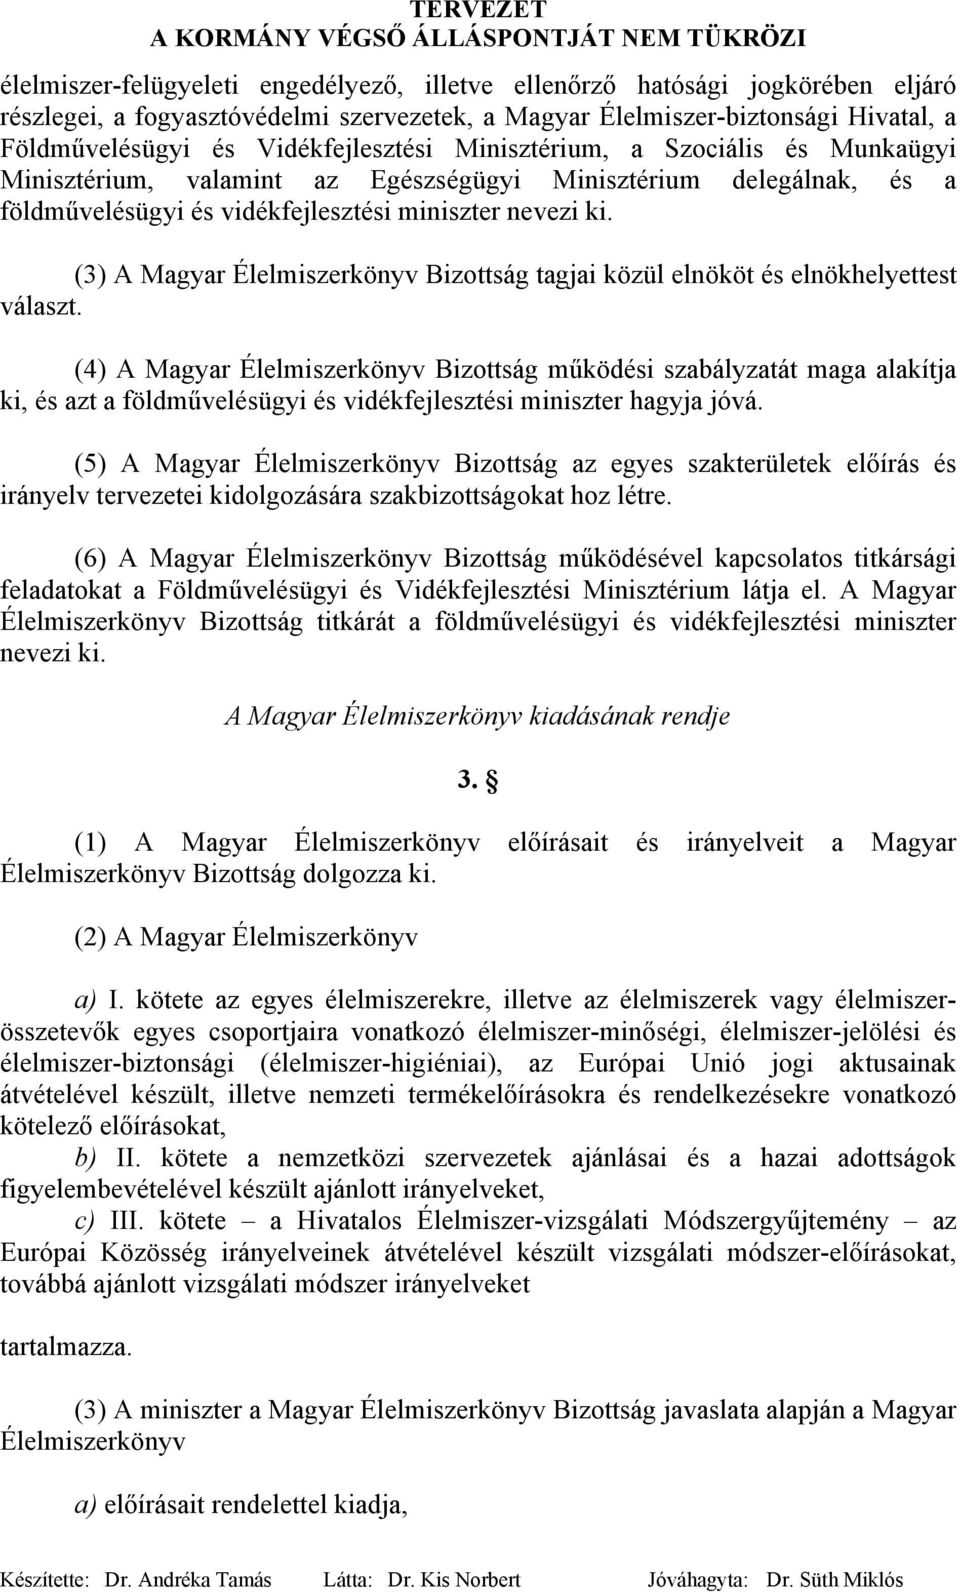 (3) A Magyar Élelmiszerkönyv Bizottság tagjai közül elnököt és elnökhelyettest választ.